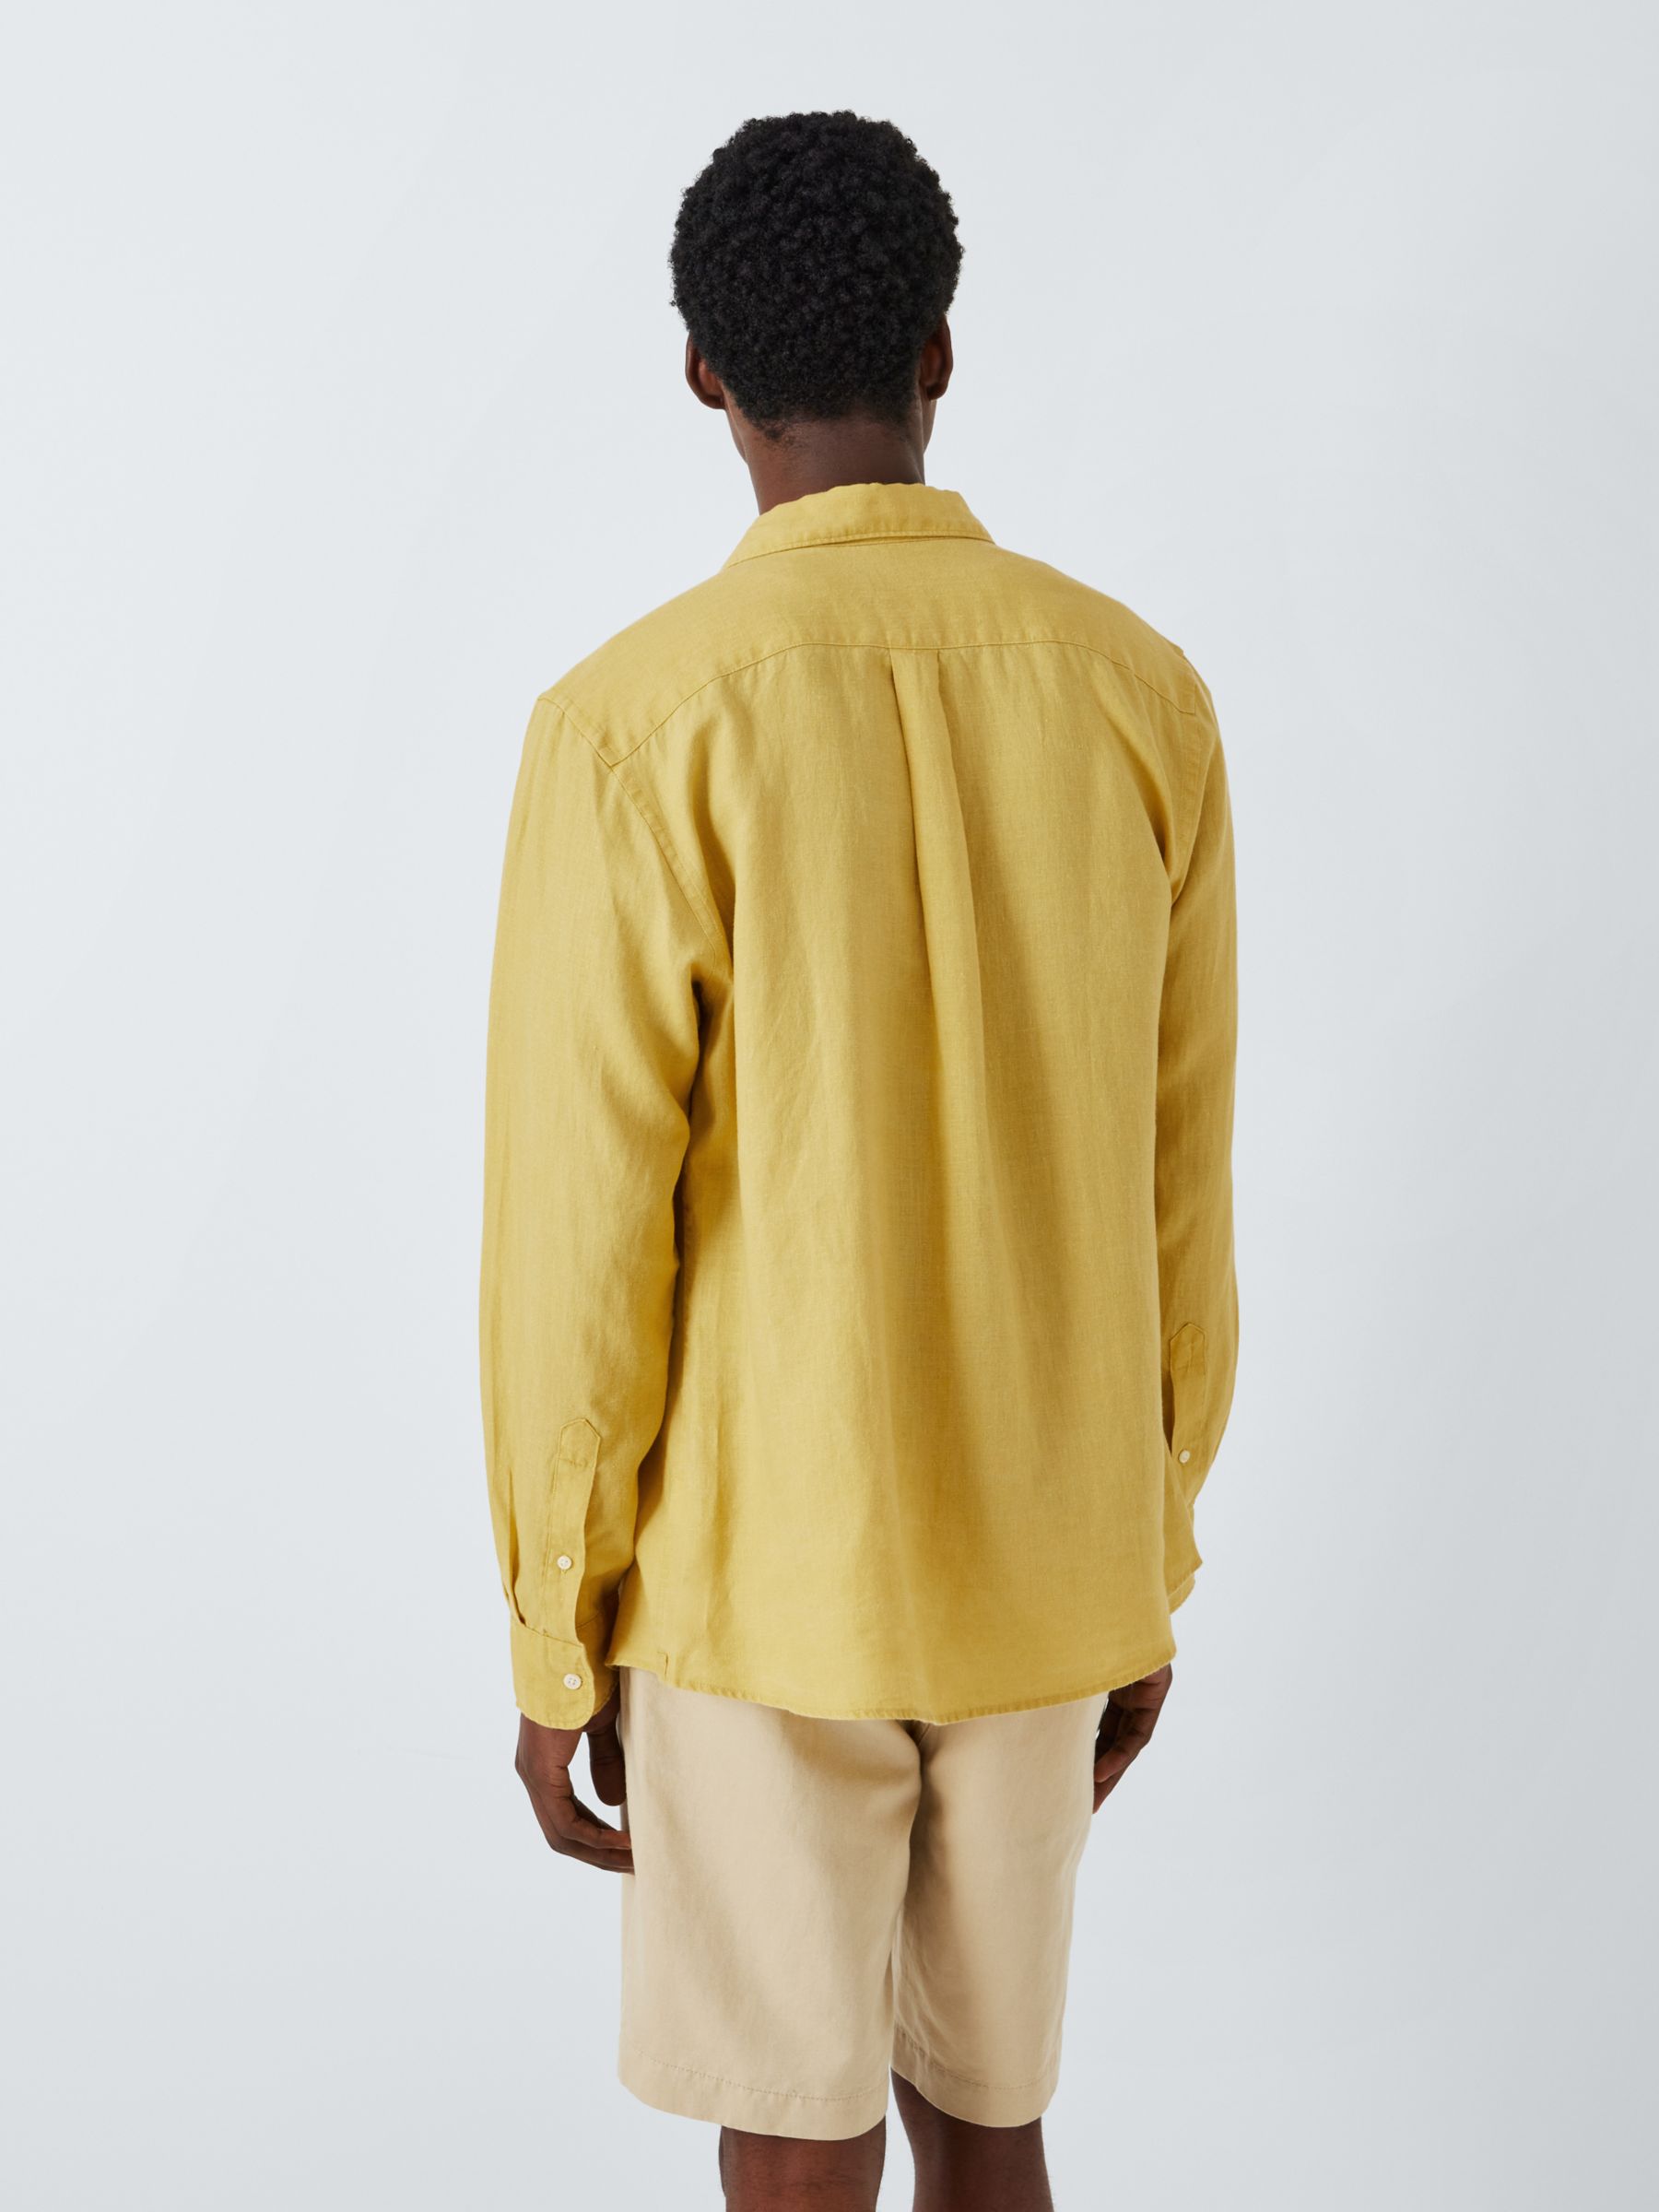 John Lewis Linen Long Sleeve Shirt, Yellow, S